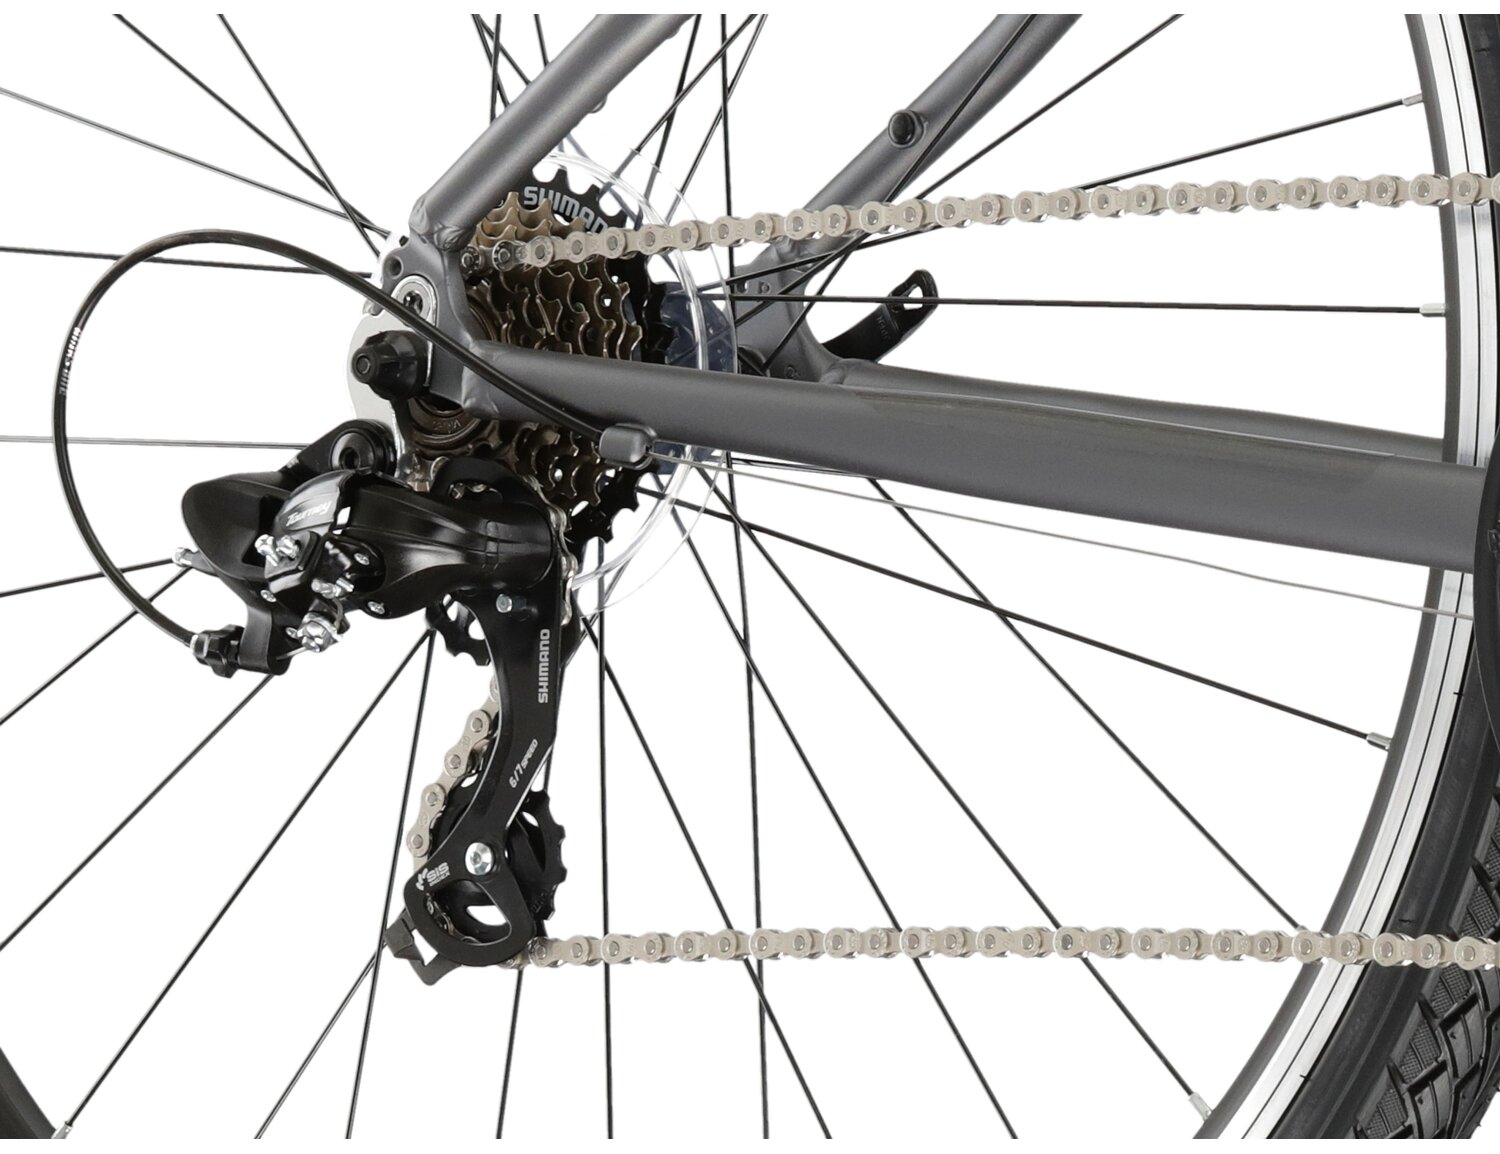  Tylna siedmiobiegowa przerzutka Shimano Tourney TY300 oraz hamulce v-brake w rowerze crossowym KROSS Evado 1.0 